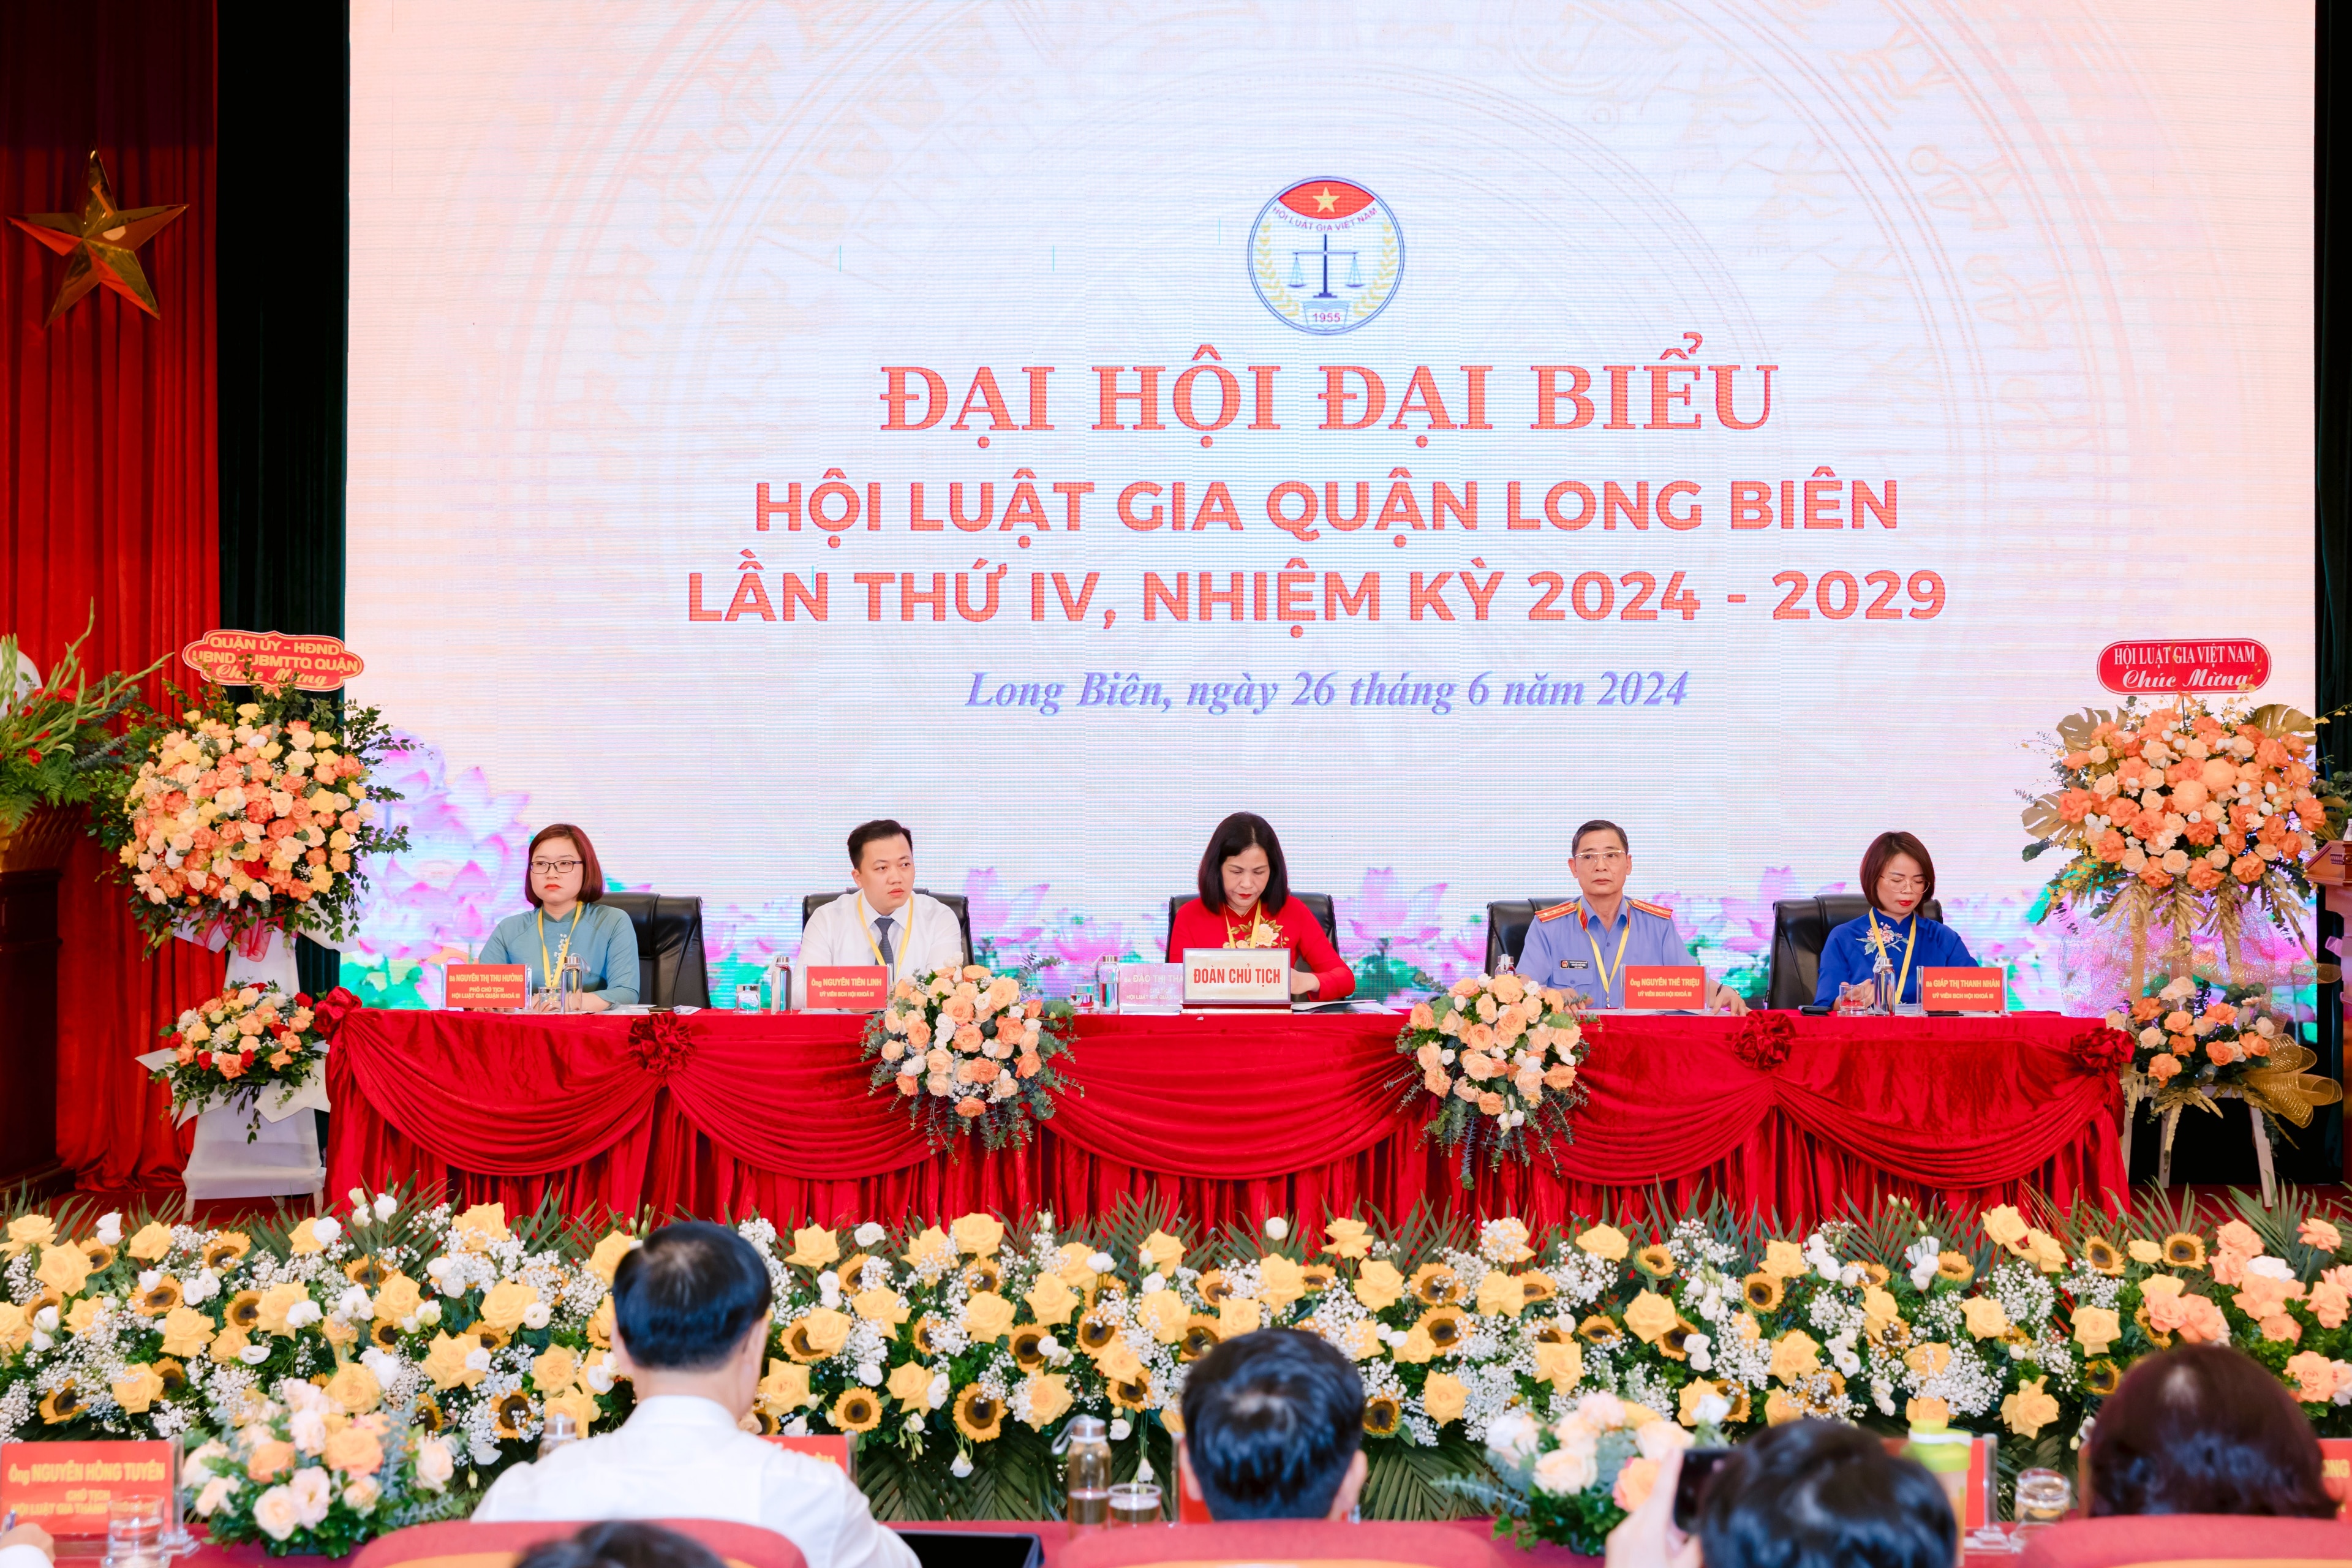 Tiêu điểm - Đại hội đại biểu HLG quận Long Biên: Kỷ cương, sáng tạo, phát triển (Hình 2).